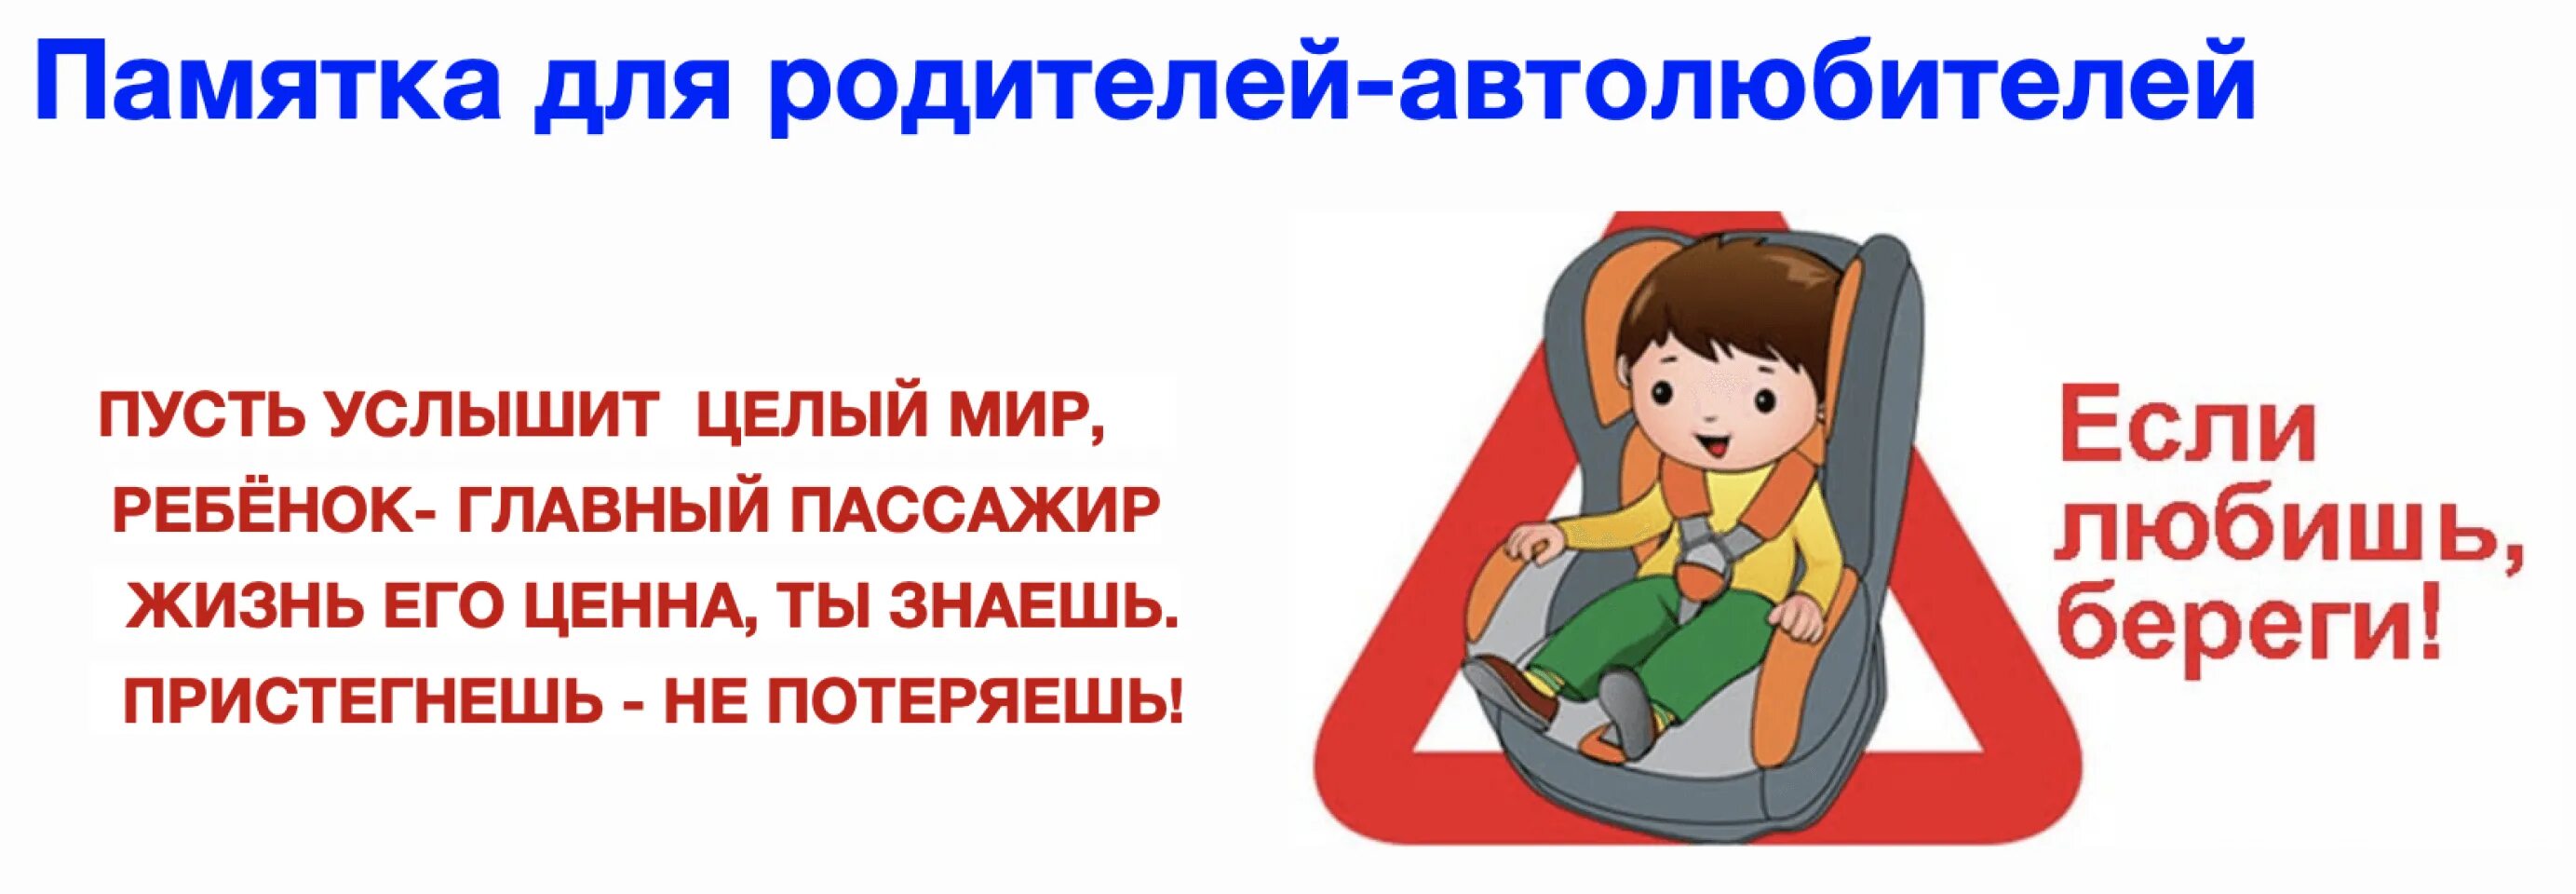 Правила безопасности в машине. Ребенок главный пассажир памятка для родителей. Безопасность детей в автомобиле. Автокресло детям памятка для детей. Родители пристегните детей ремнями безопасности.